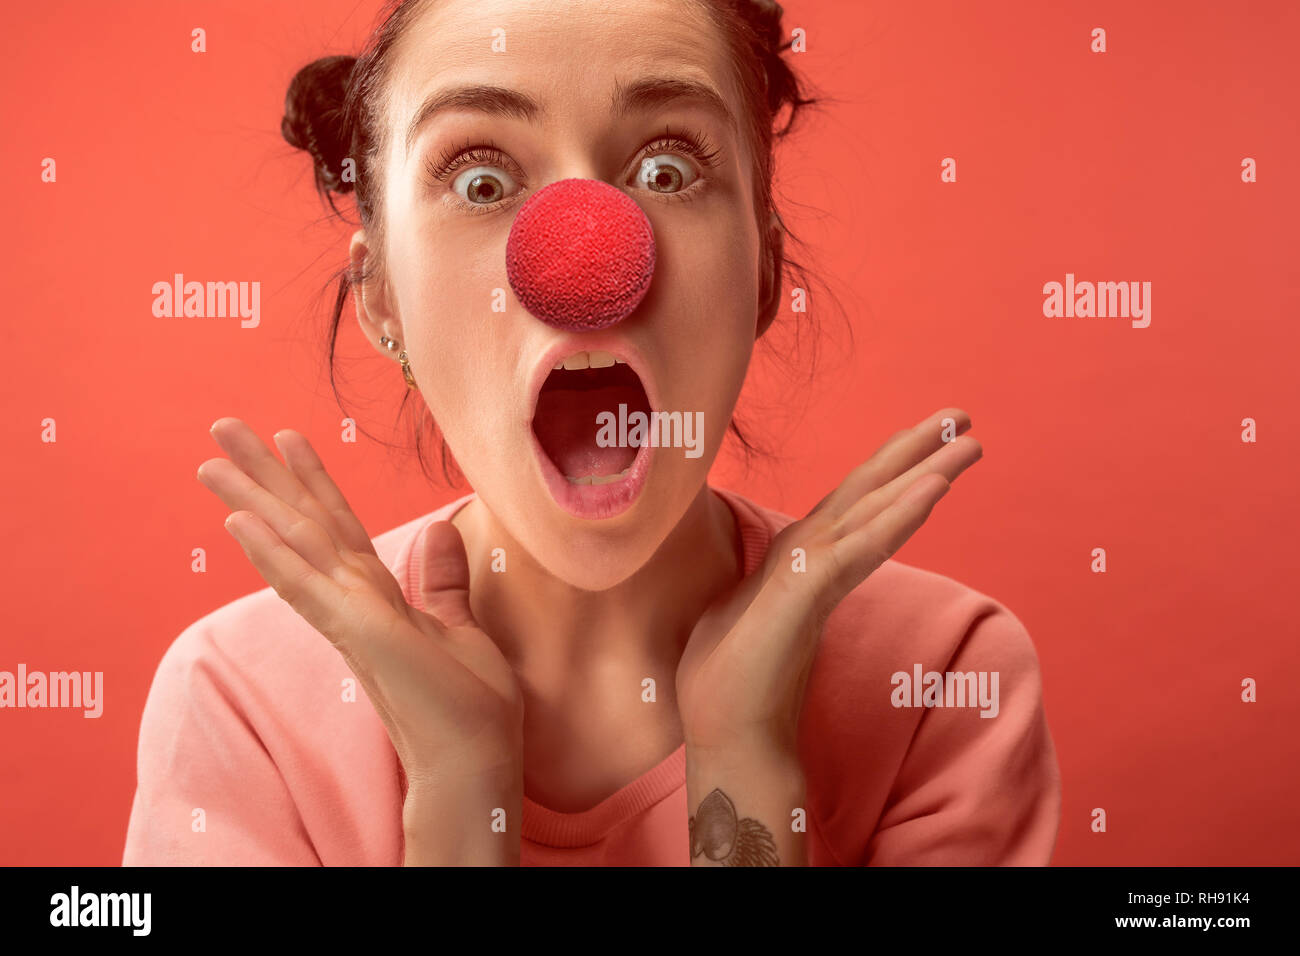 L'heureuse surprise et smiling woman sur nez rouge 24. Le clown, fun, party, fête, funny, la joie, l'humour, de concept Banque D'Images